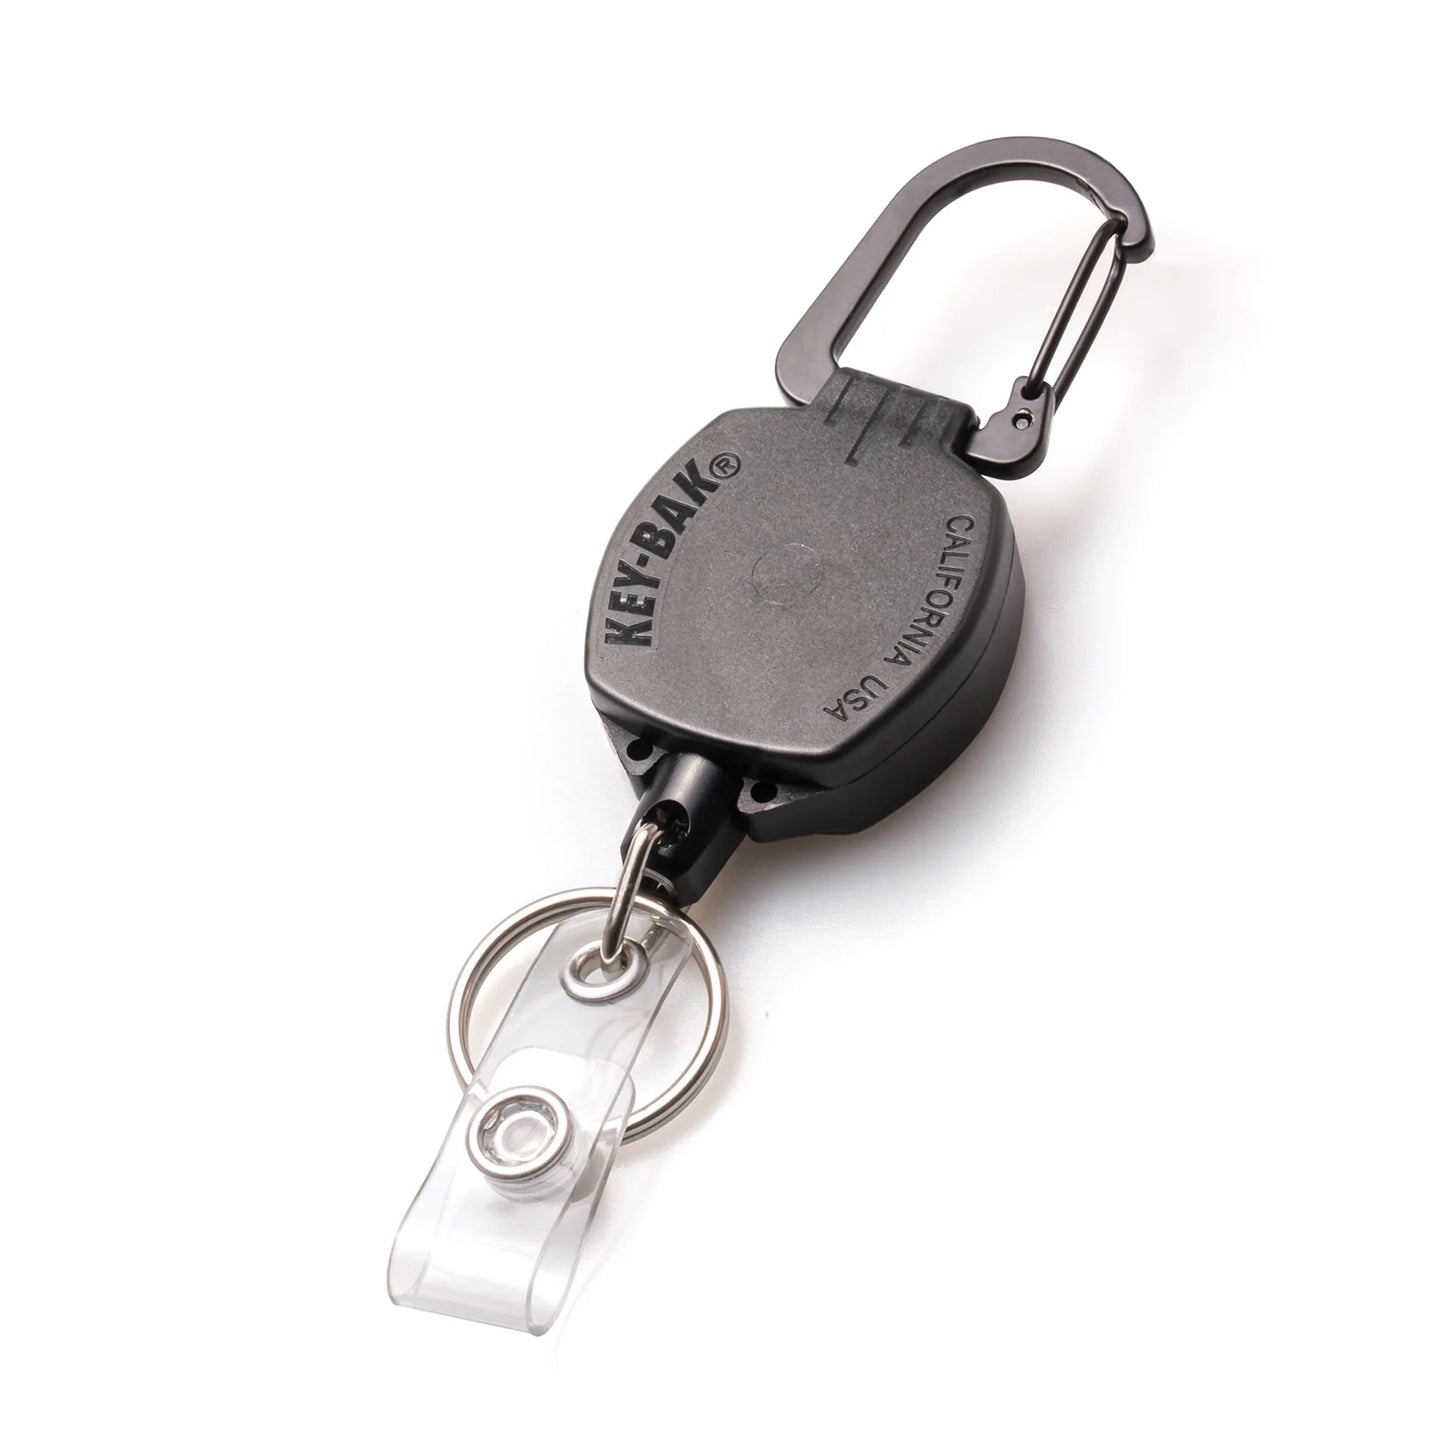 Key-Bak Sidekick Jojo för id kort / nycklar, med karbinhake - 60 cm